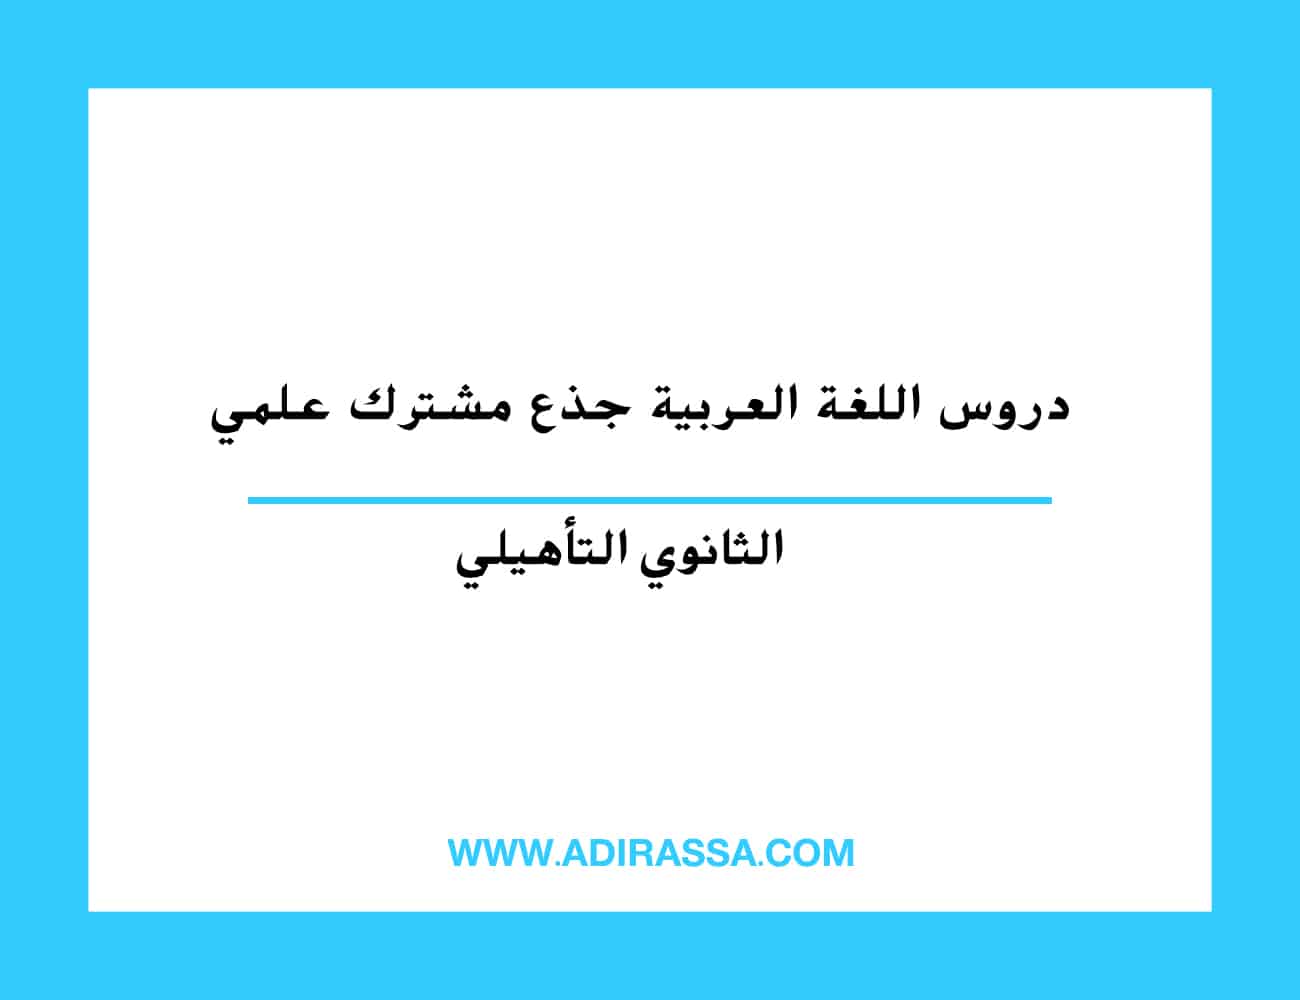 دروس اللغة العربية جذع مشترك علمي المقررة بالمدرسة المغربية